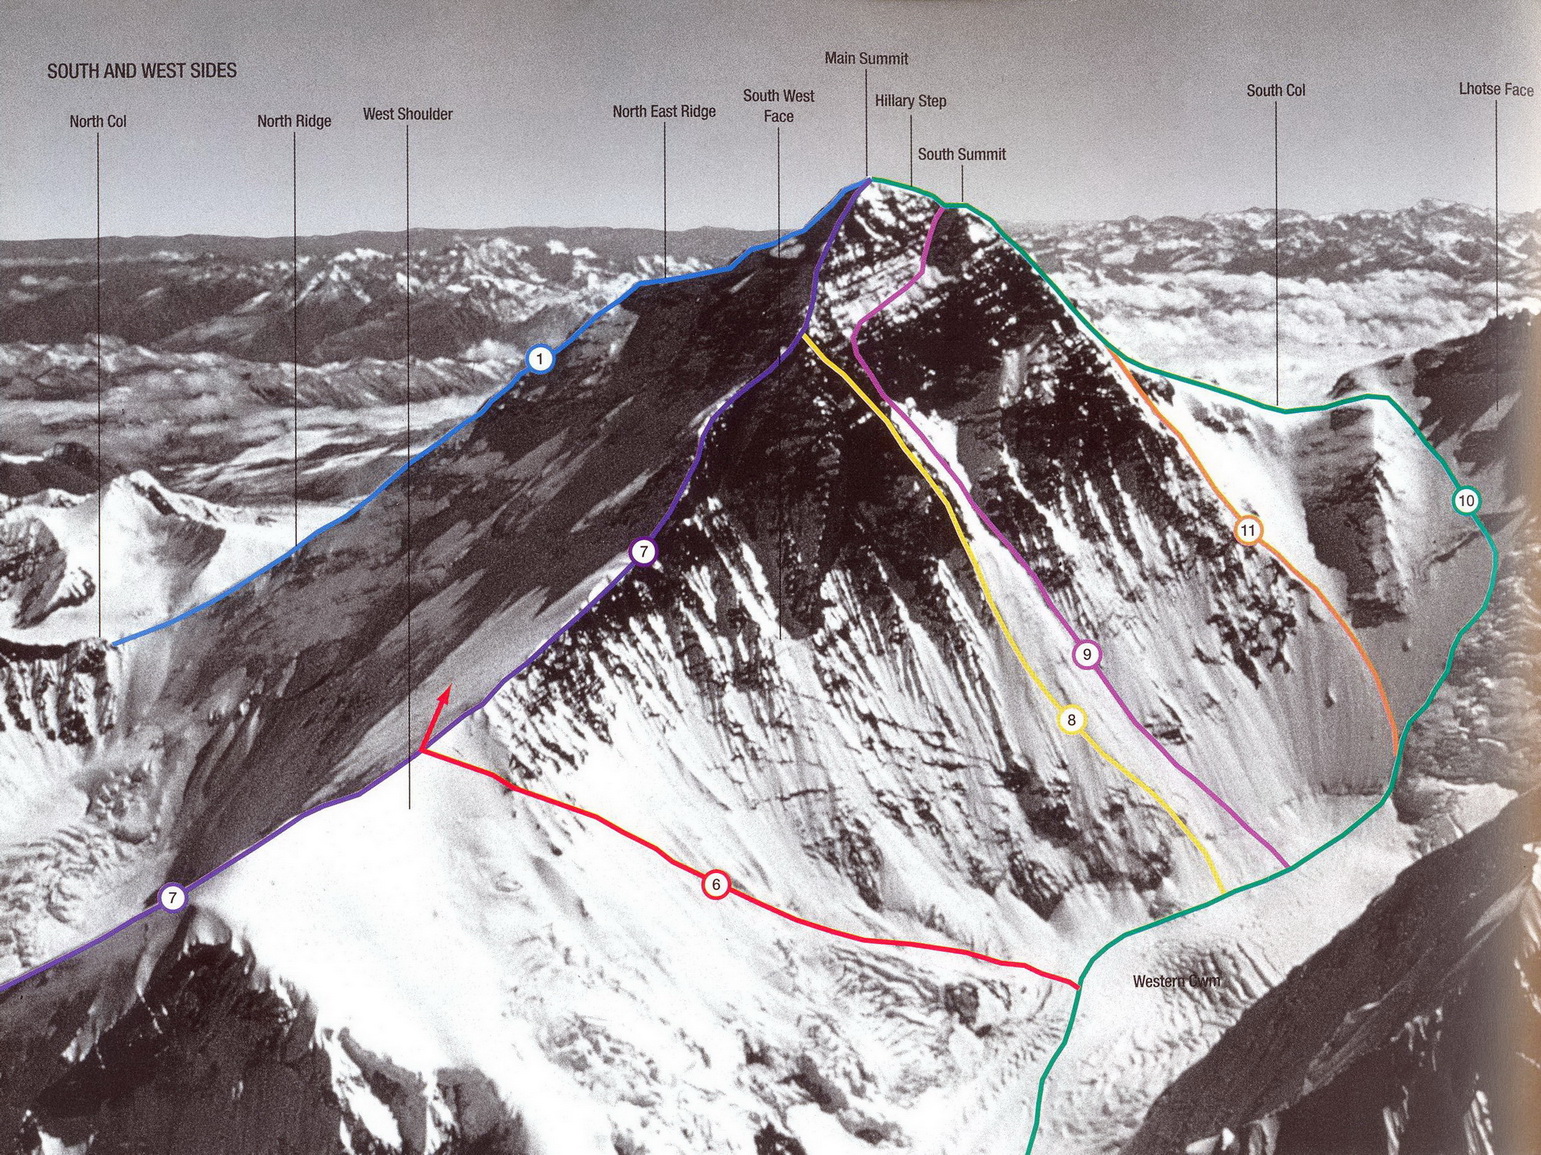 Маршруты юго-западной стены Эвереста. 9 - английская экспедиция 1975 года под руководством Криса Бонингтона, 11 - польская экспедиция 1980 г. (Ежи Кукучка и Анджей Чок).